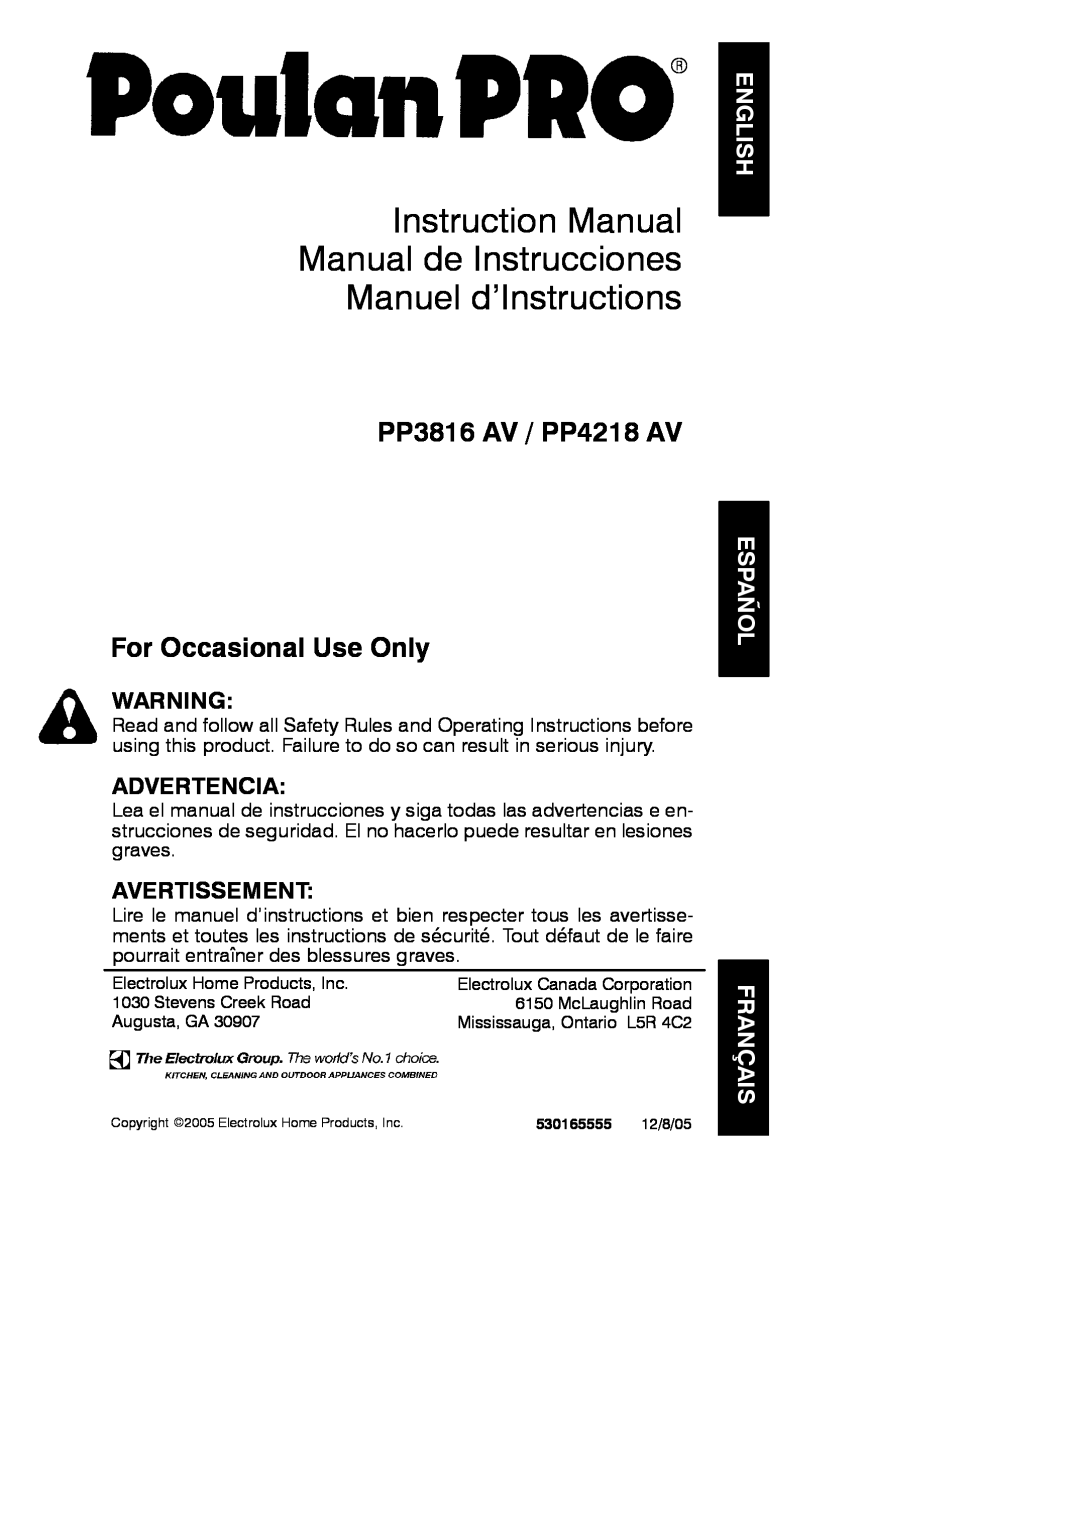 Poulan PP3816 AV, PP4218 AV instruction manual English, Español Français, PP3816 AV / PP4218 AV For Occasional Use Only 